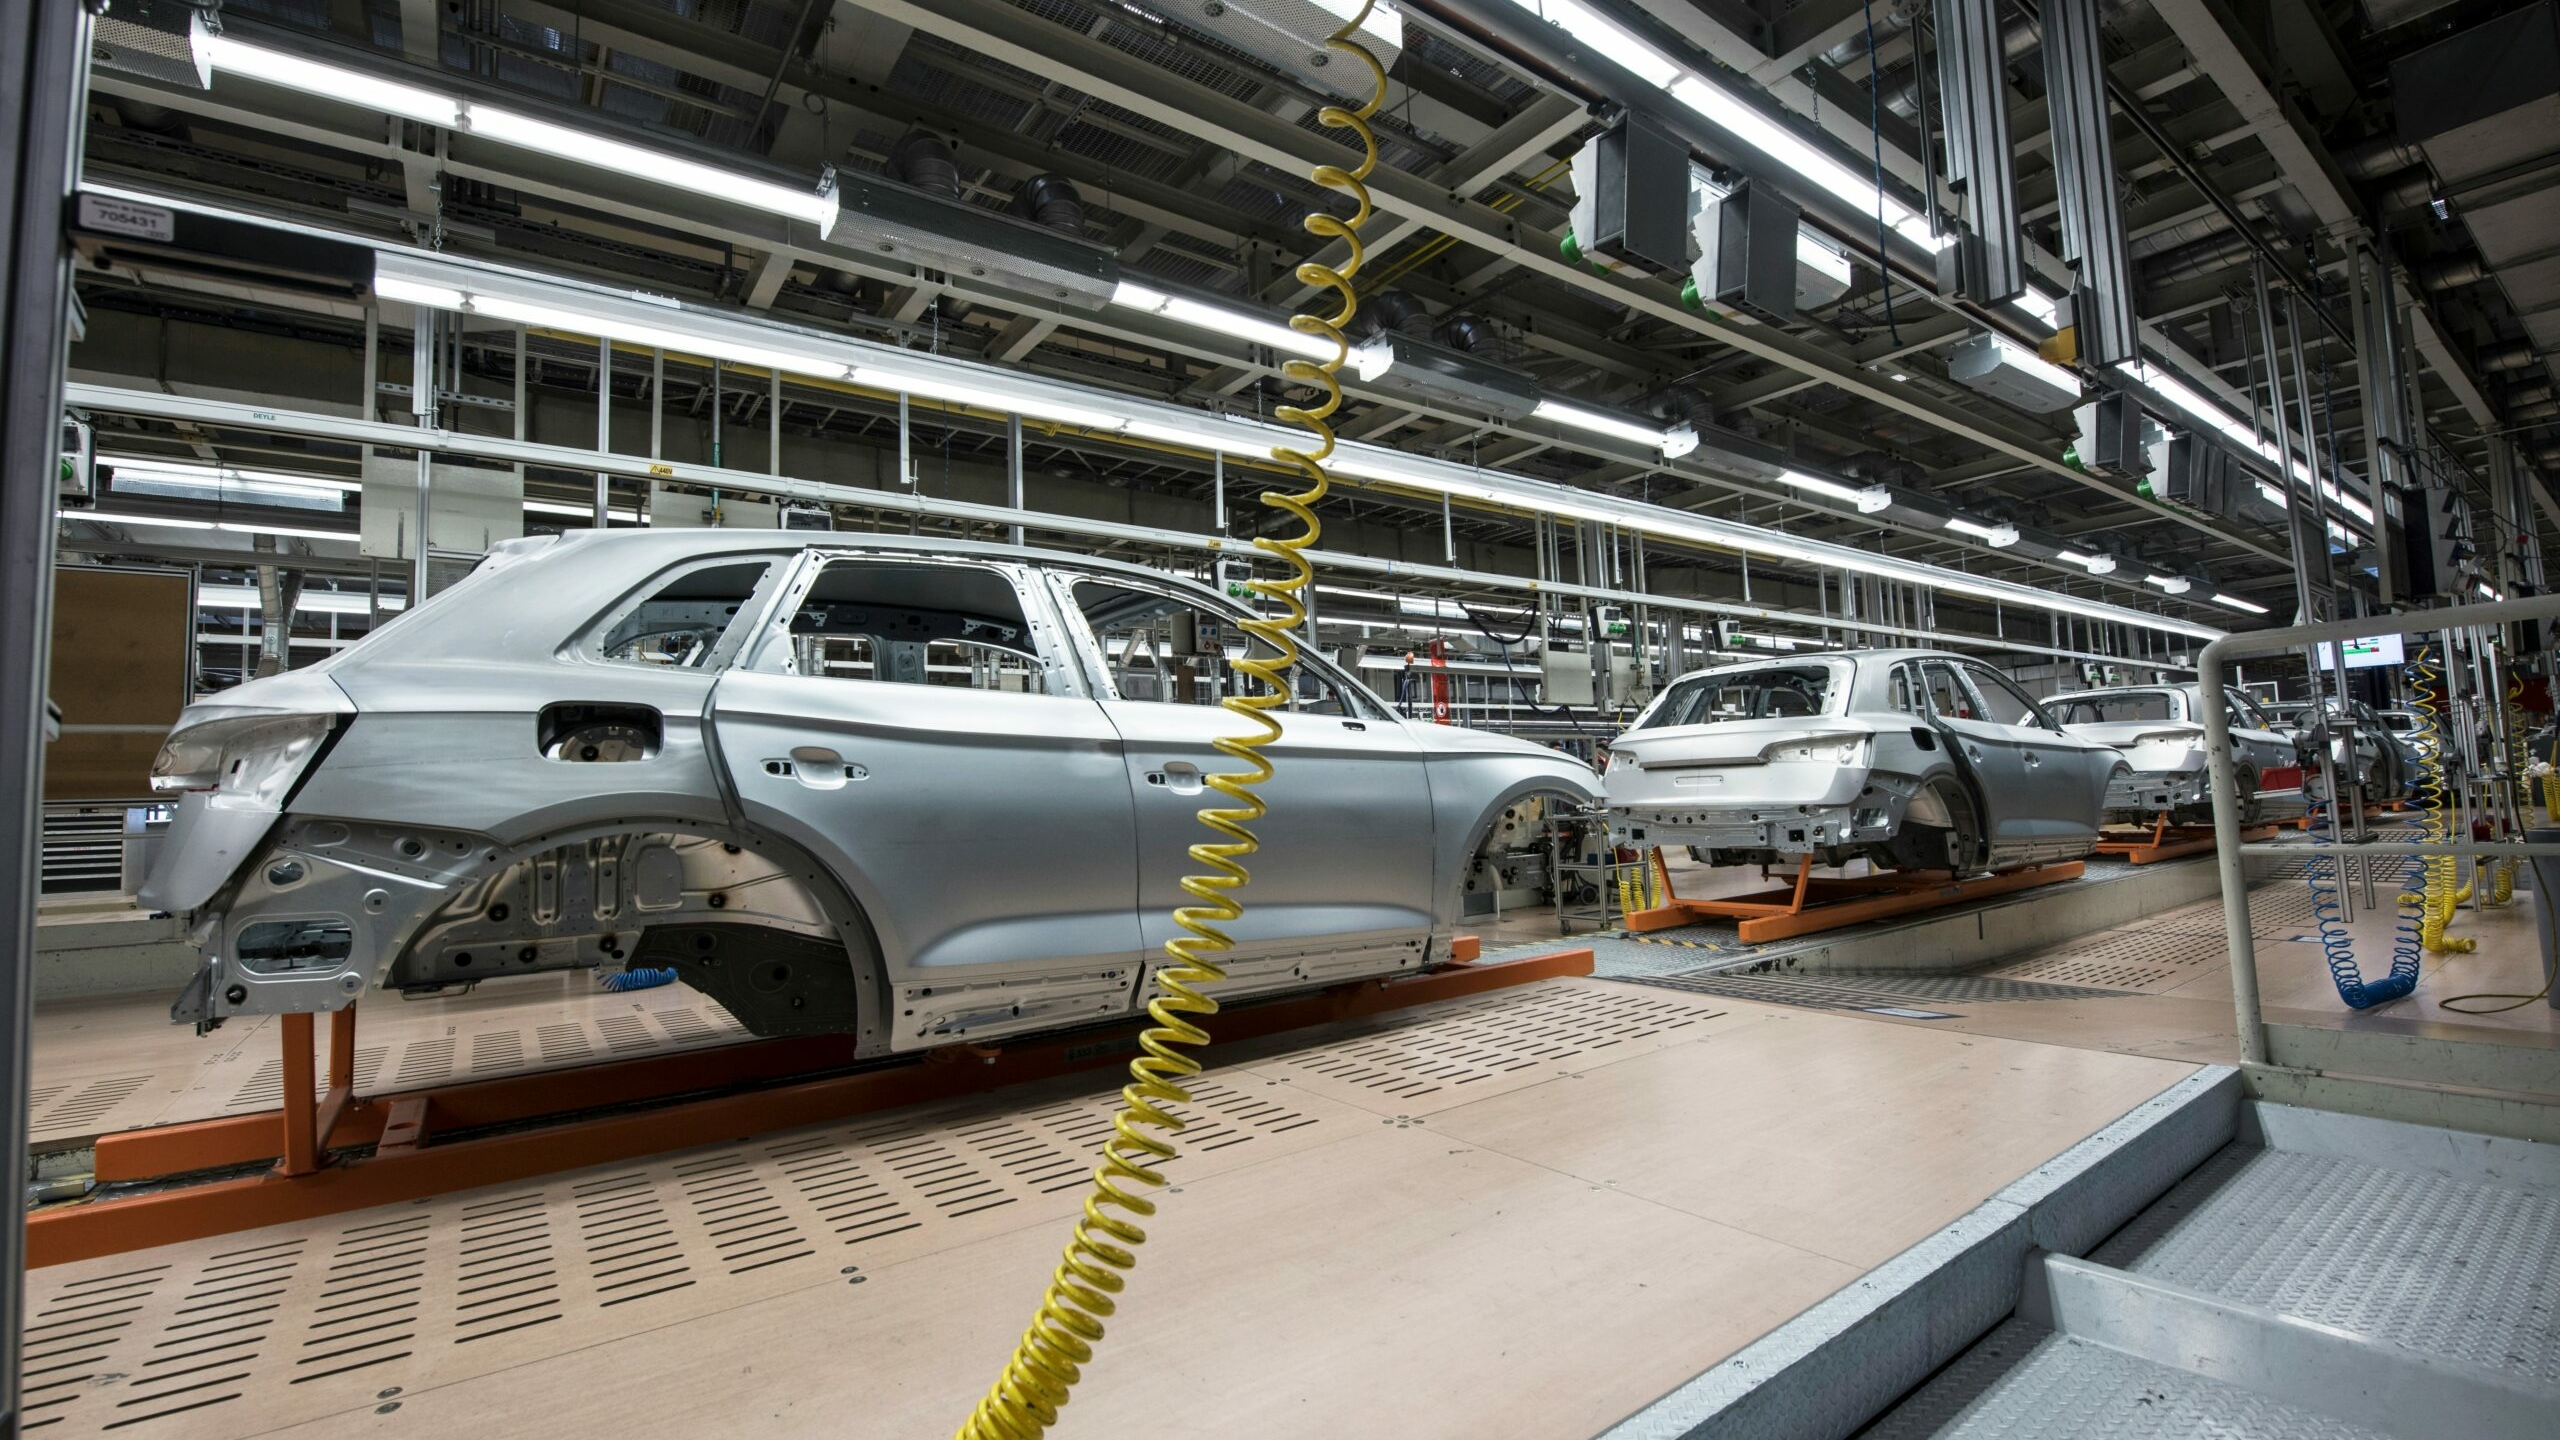 Бывший завод Toyota в Петербурге перешел отечественному автопроизводителю Aurus